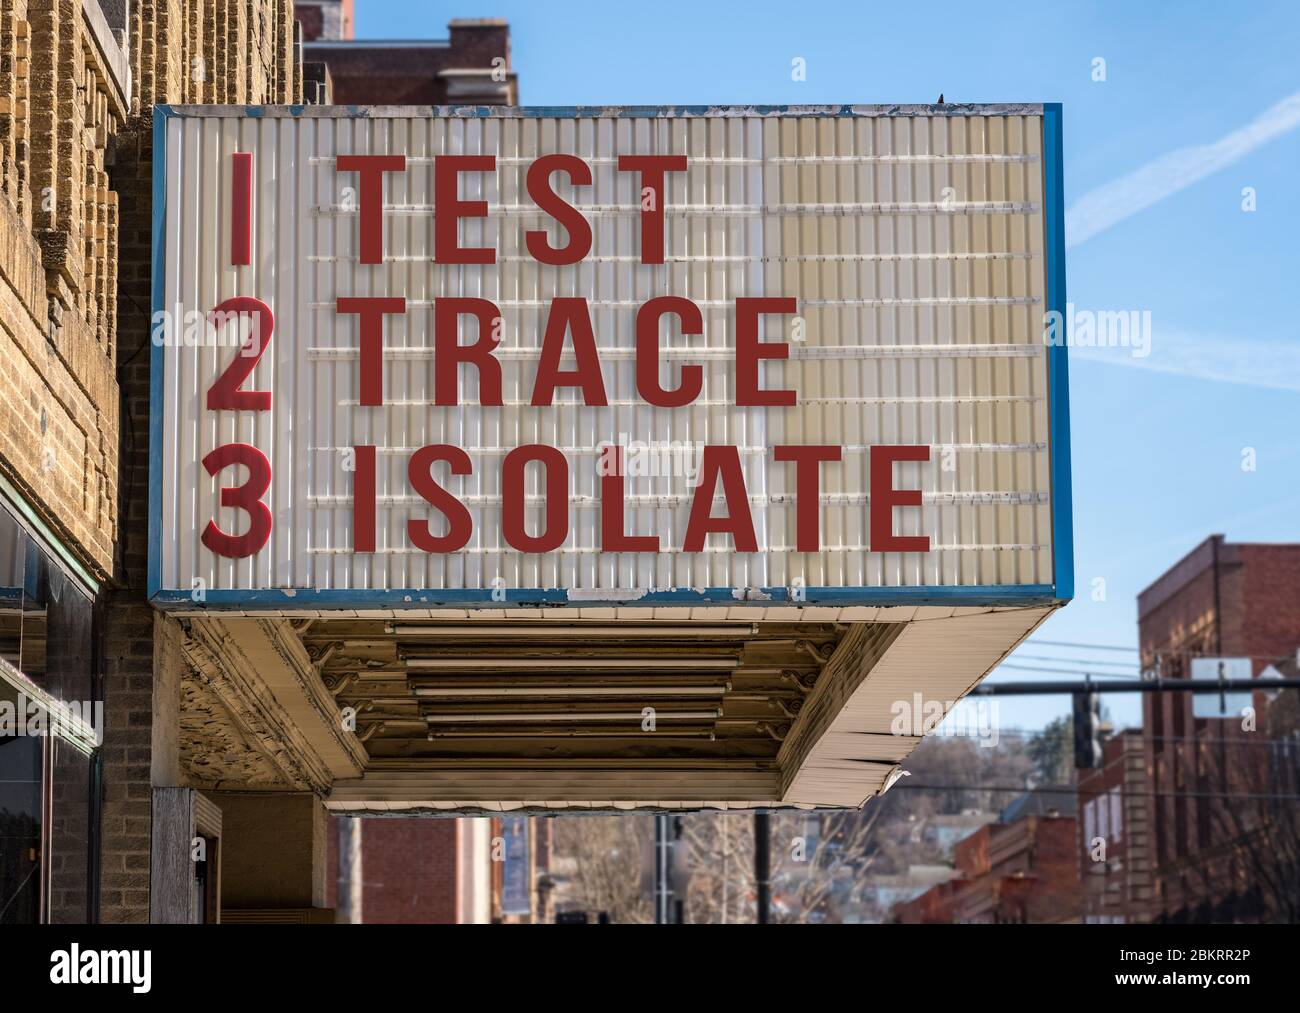 Mockup der Kino-Plakatwand mit Test, Trace, isolieren Nachricht, um die Coronavirus-Epidemie zu kontrollieren, sobald Wirtschaft öffnet sich Stockfoto